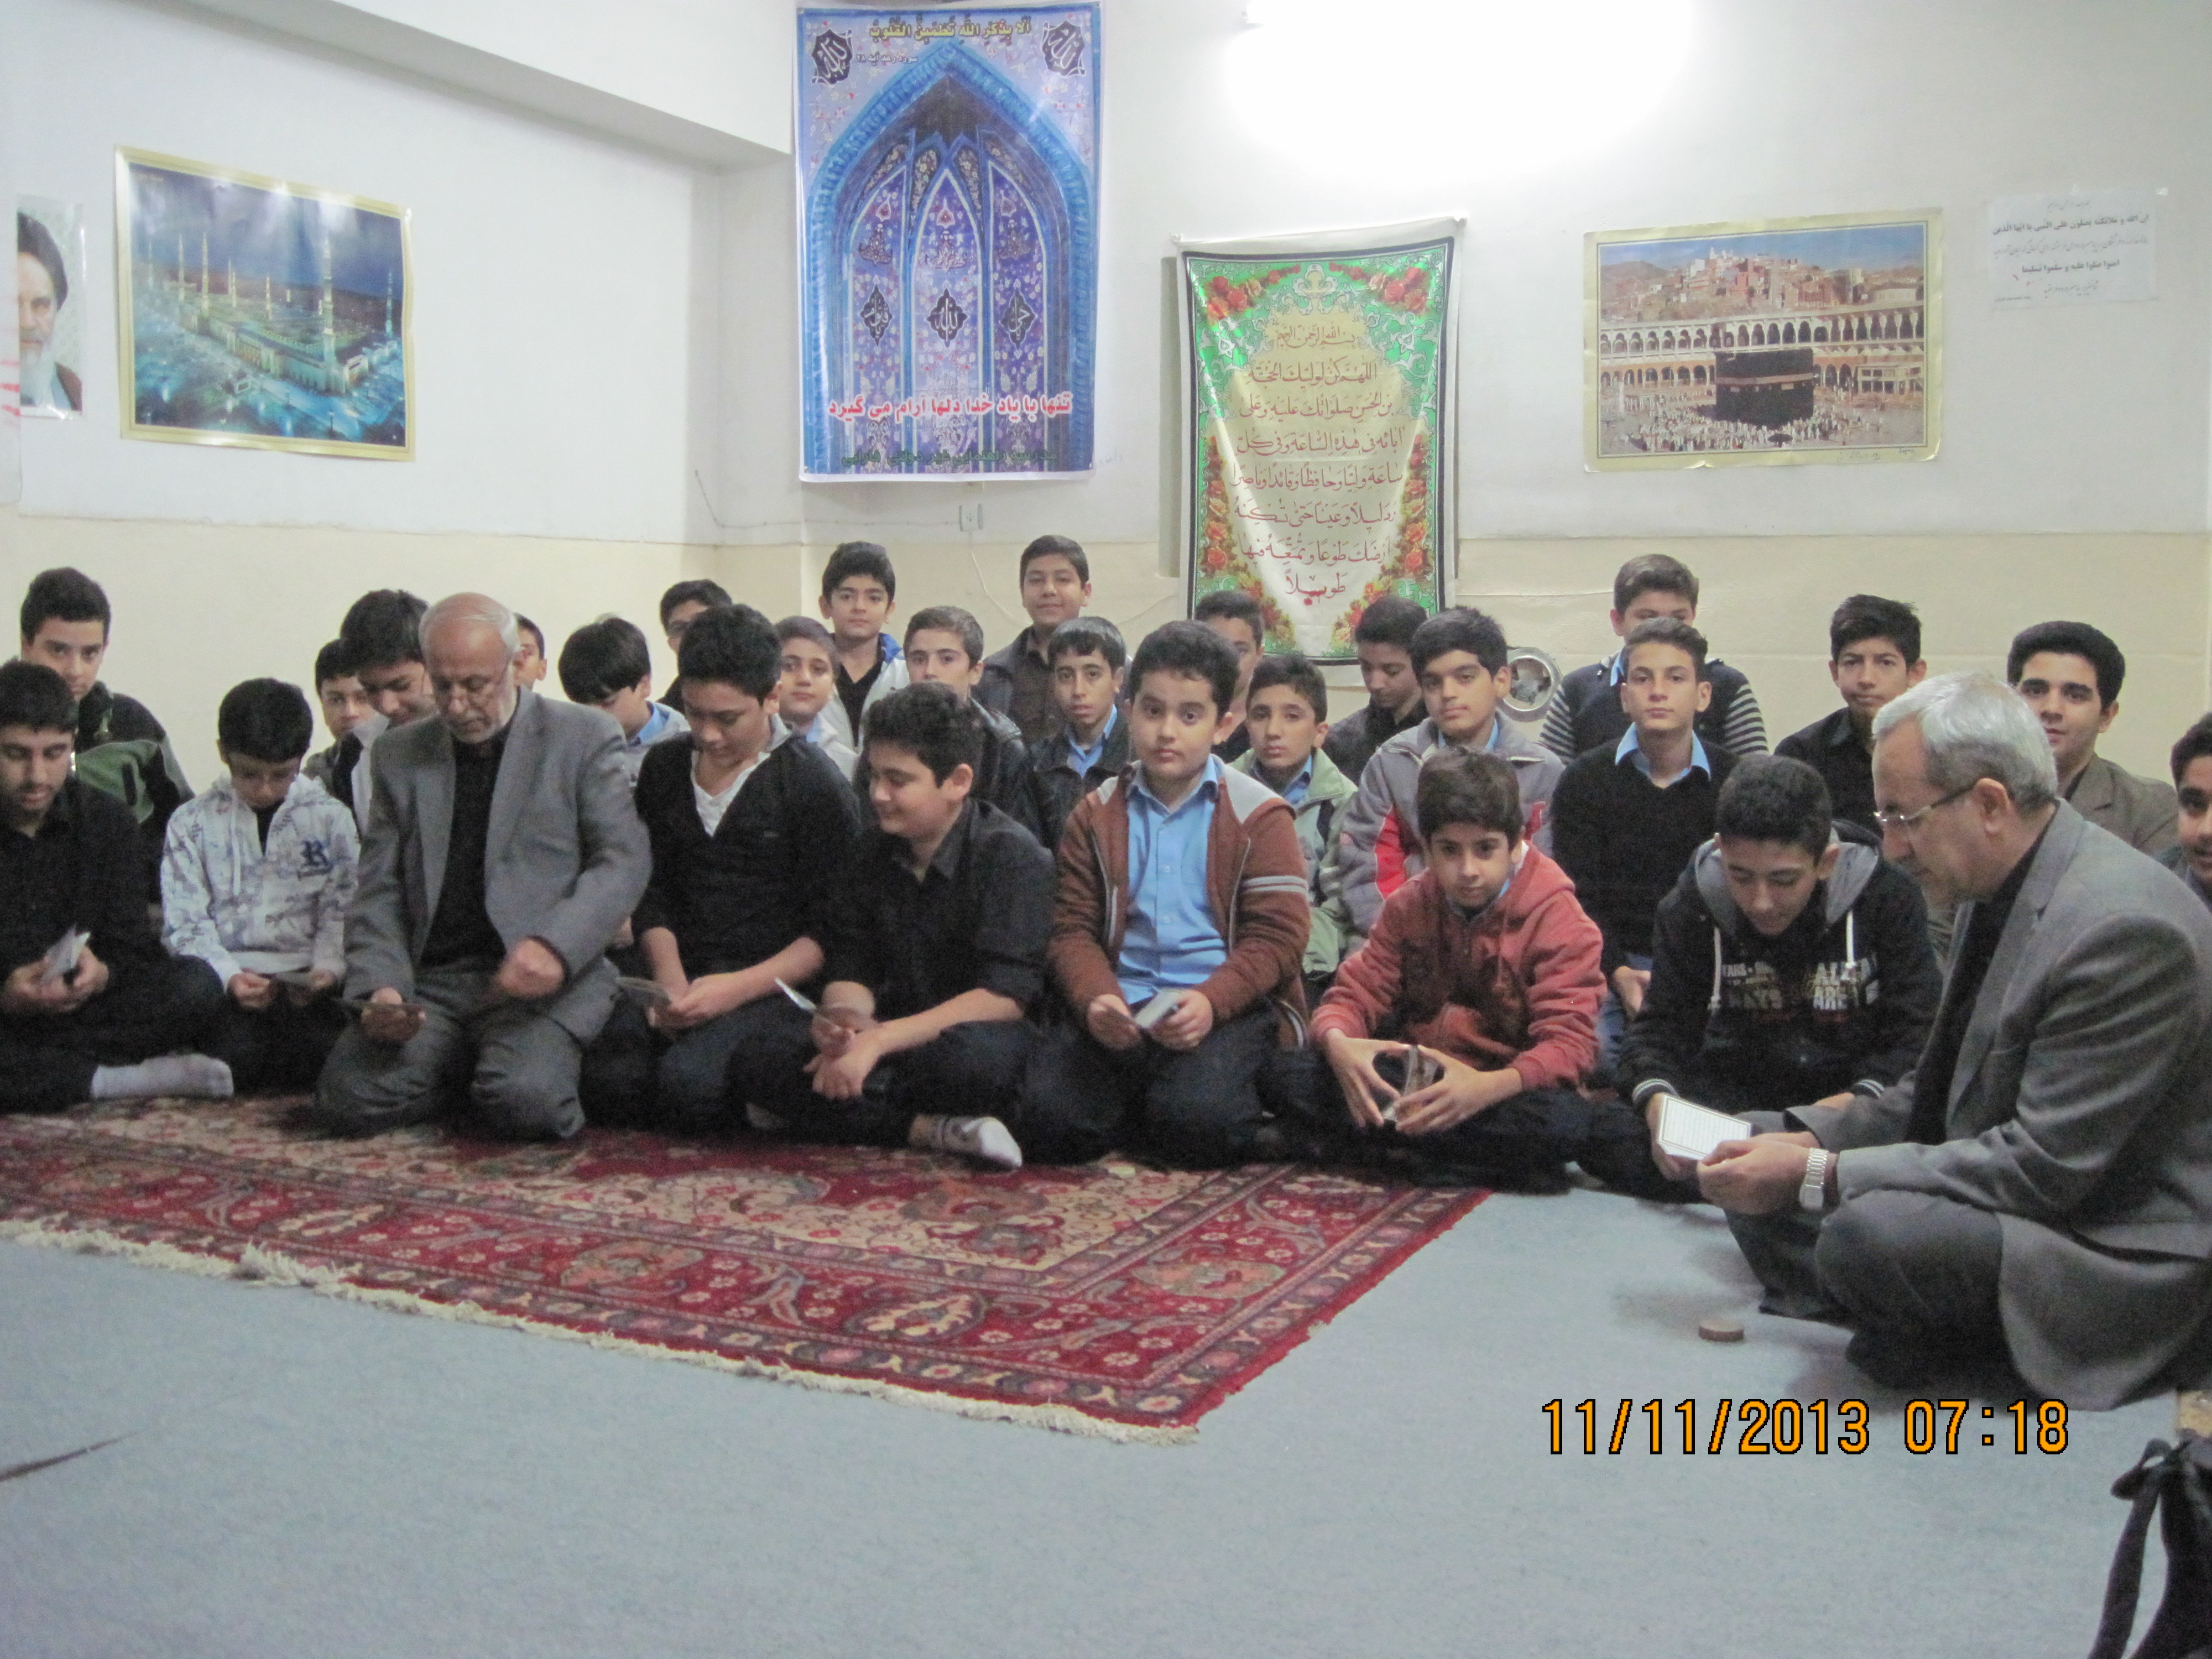 اجرای مراسم معنوی " زیارت عاشورا " روز سه شنبه 9/25  از ساعت 7 صبح در نمازخانه مدرسه 